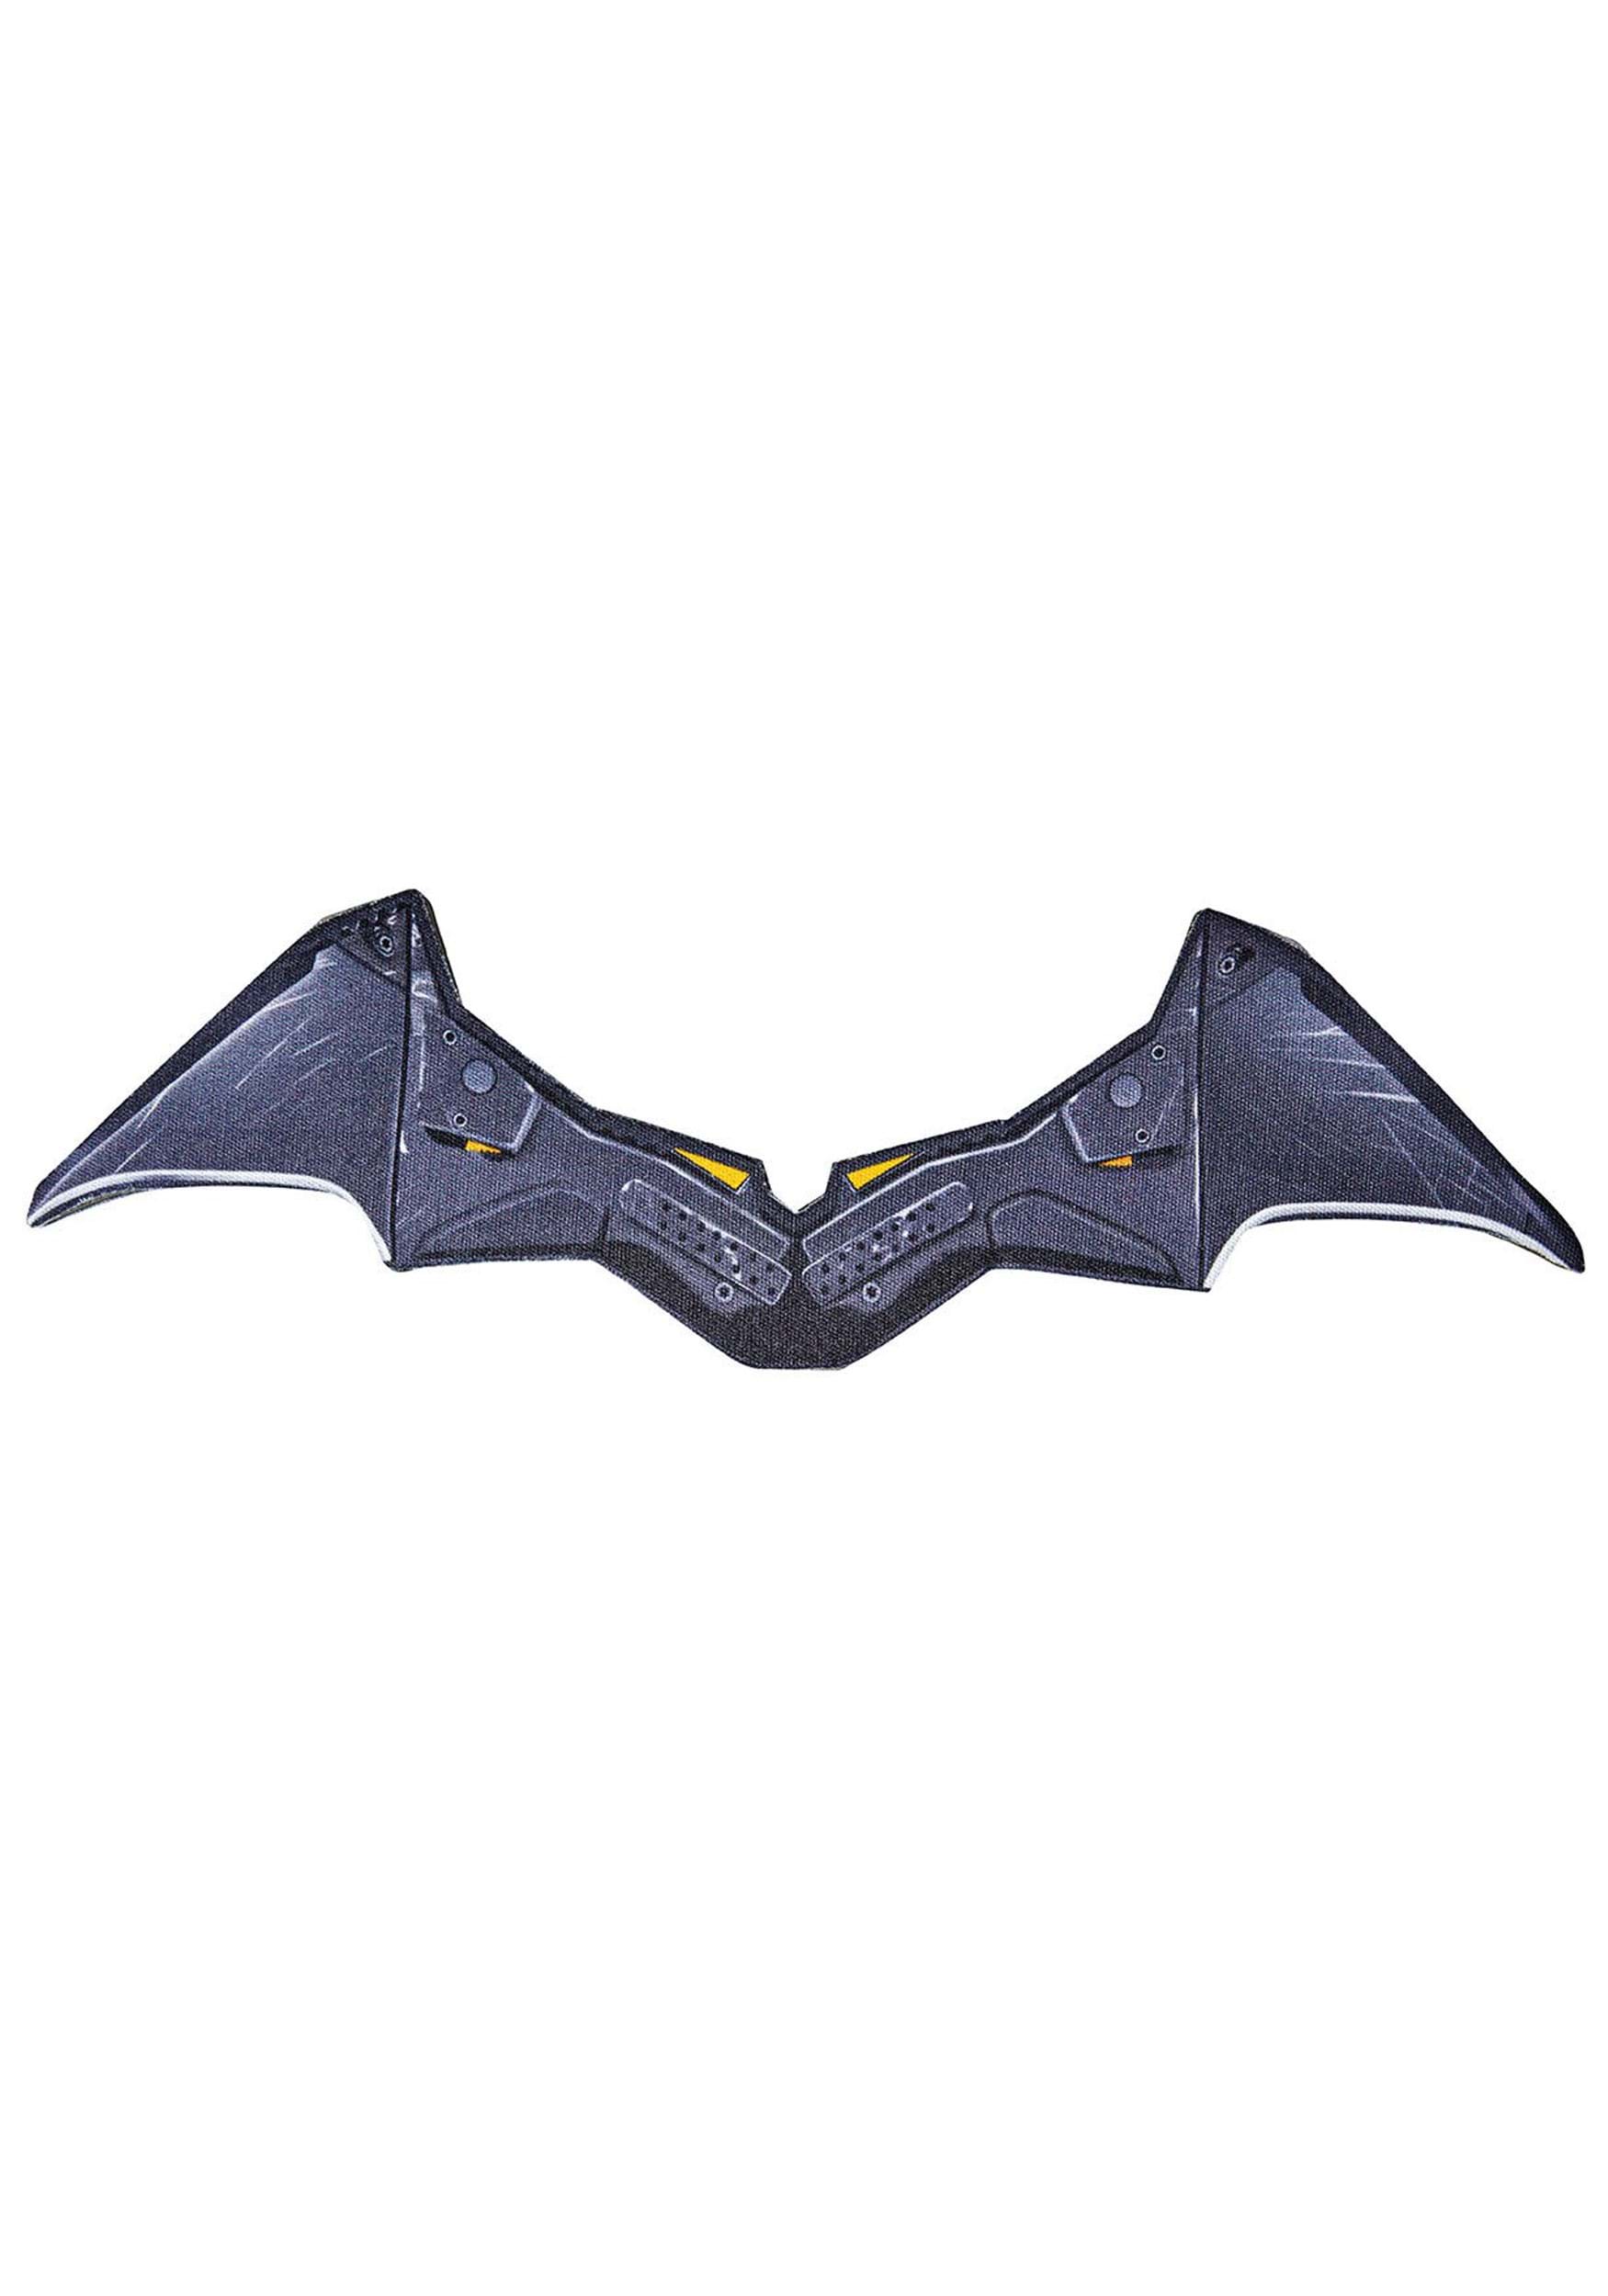 El Batman Batarang Multicolor Colombia